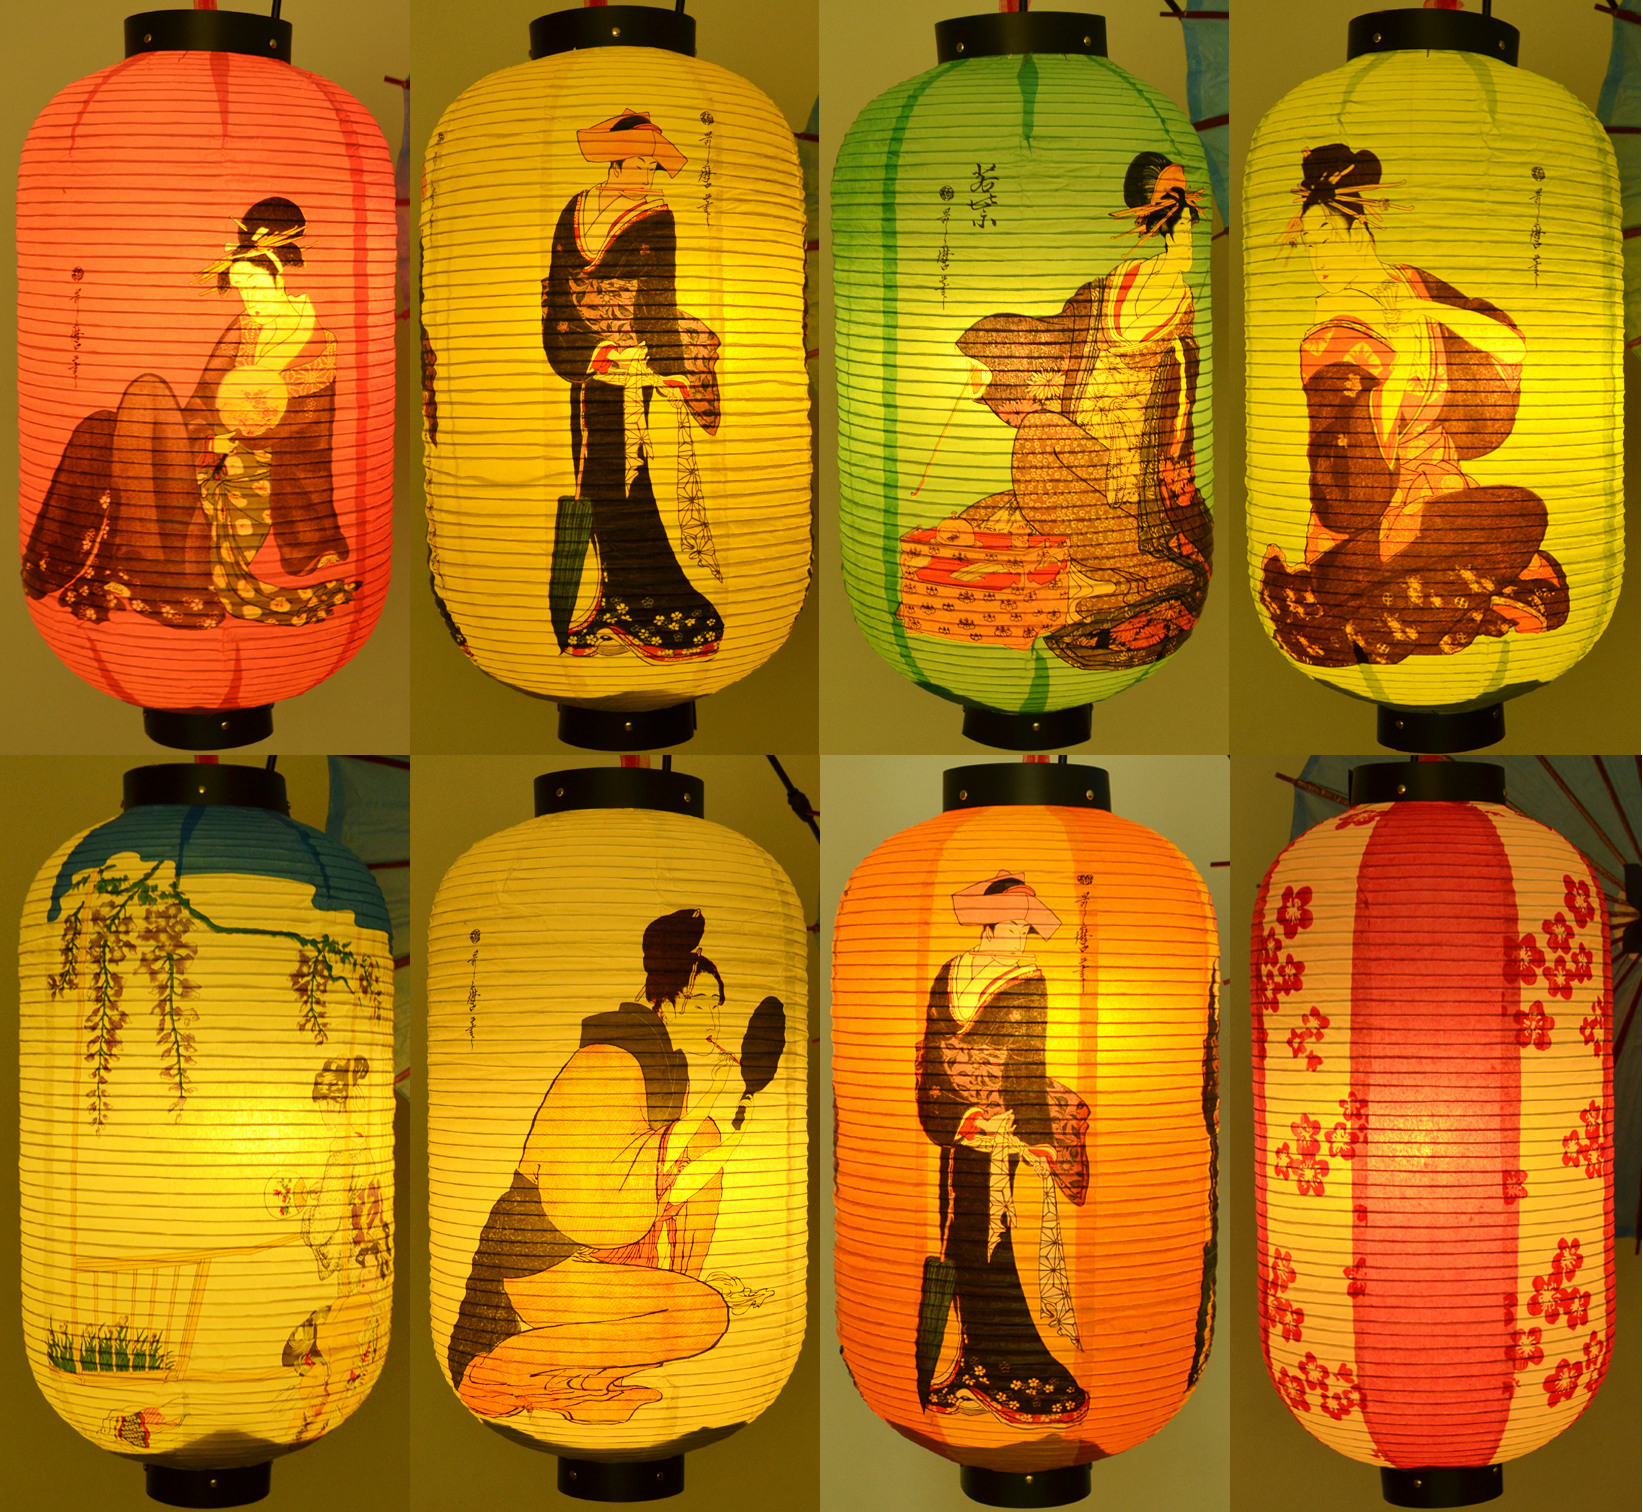 日式餐厅料理酒店装饰纸灯笼 日本浮世绘美人图纸灯时尚中秋灯笼